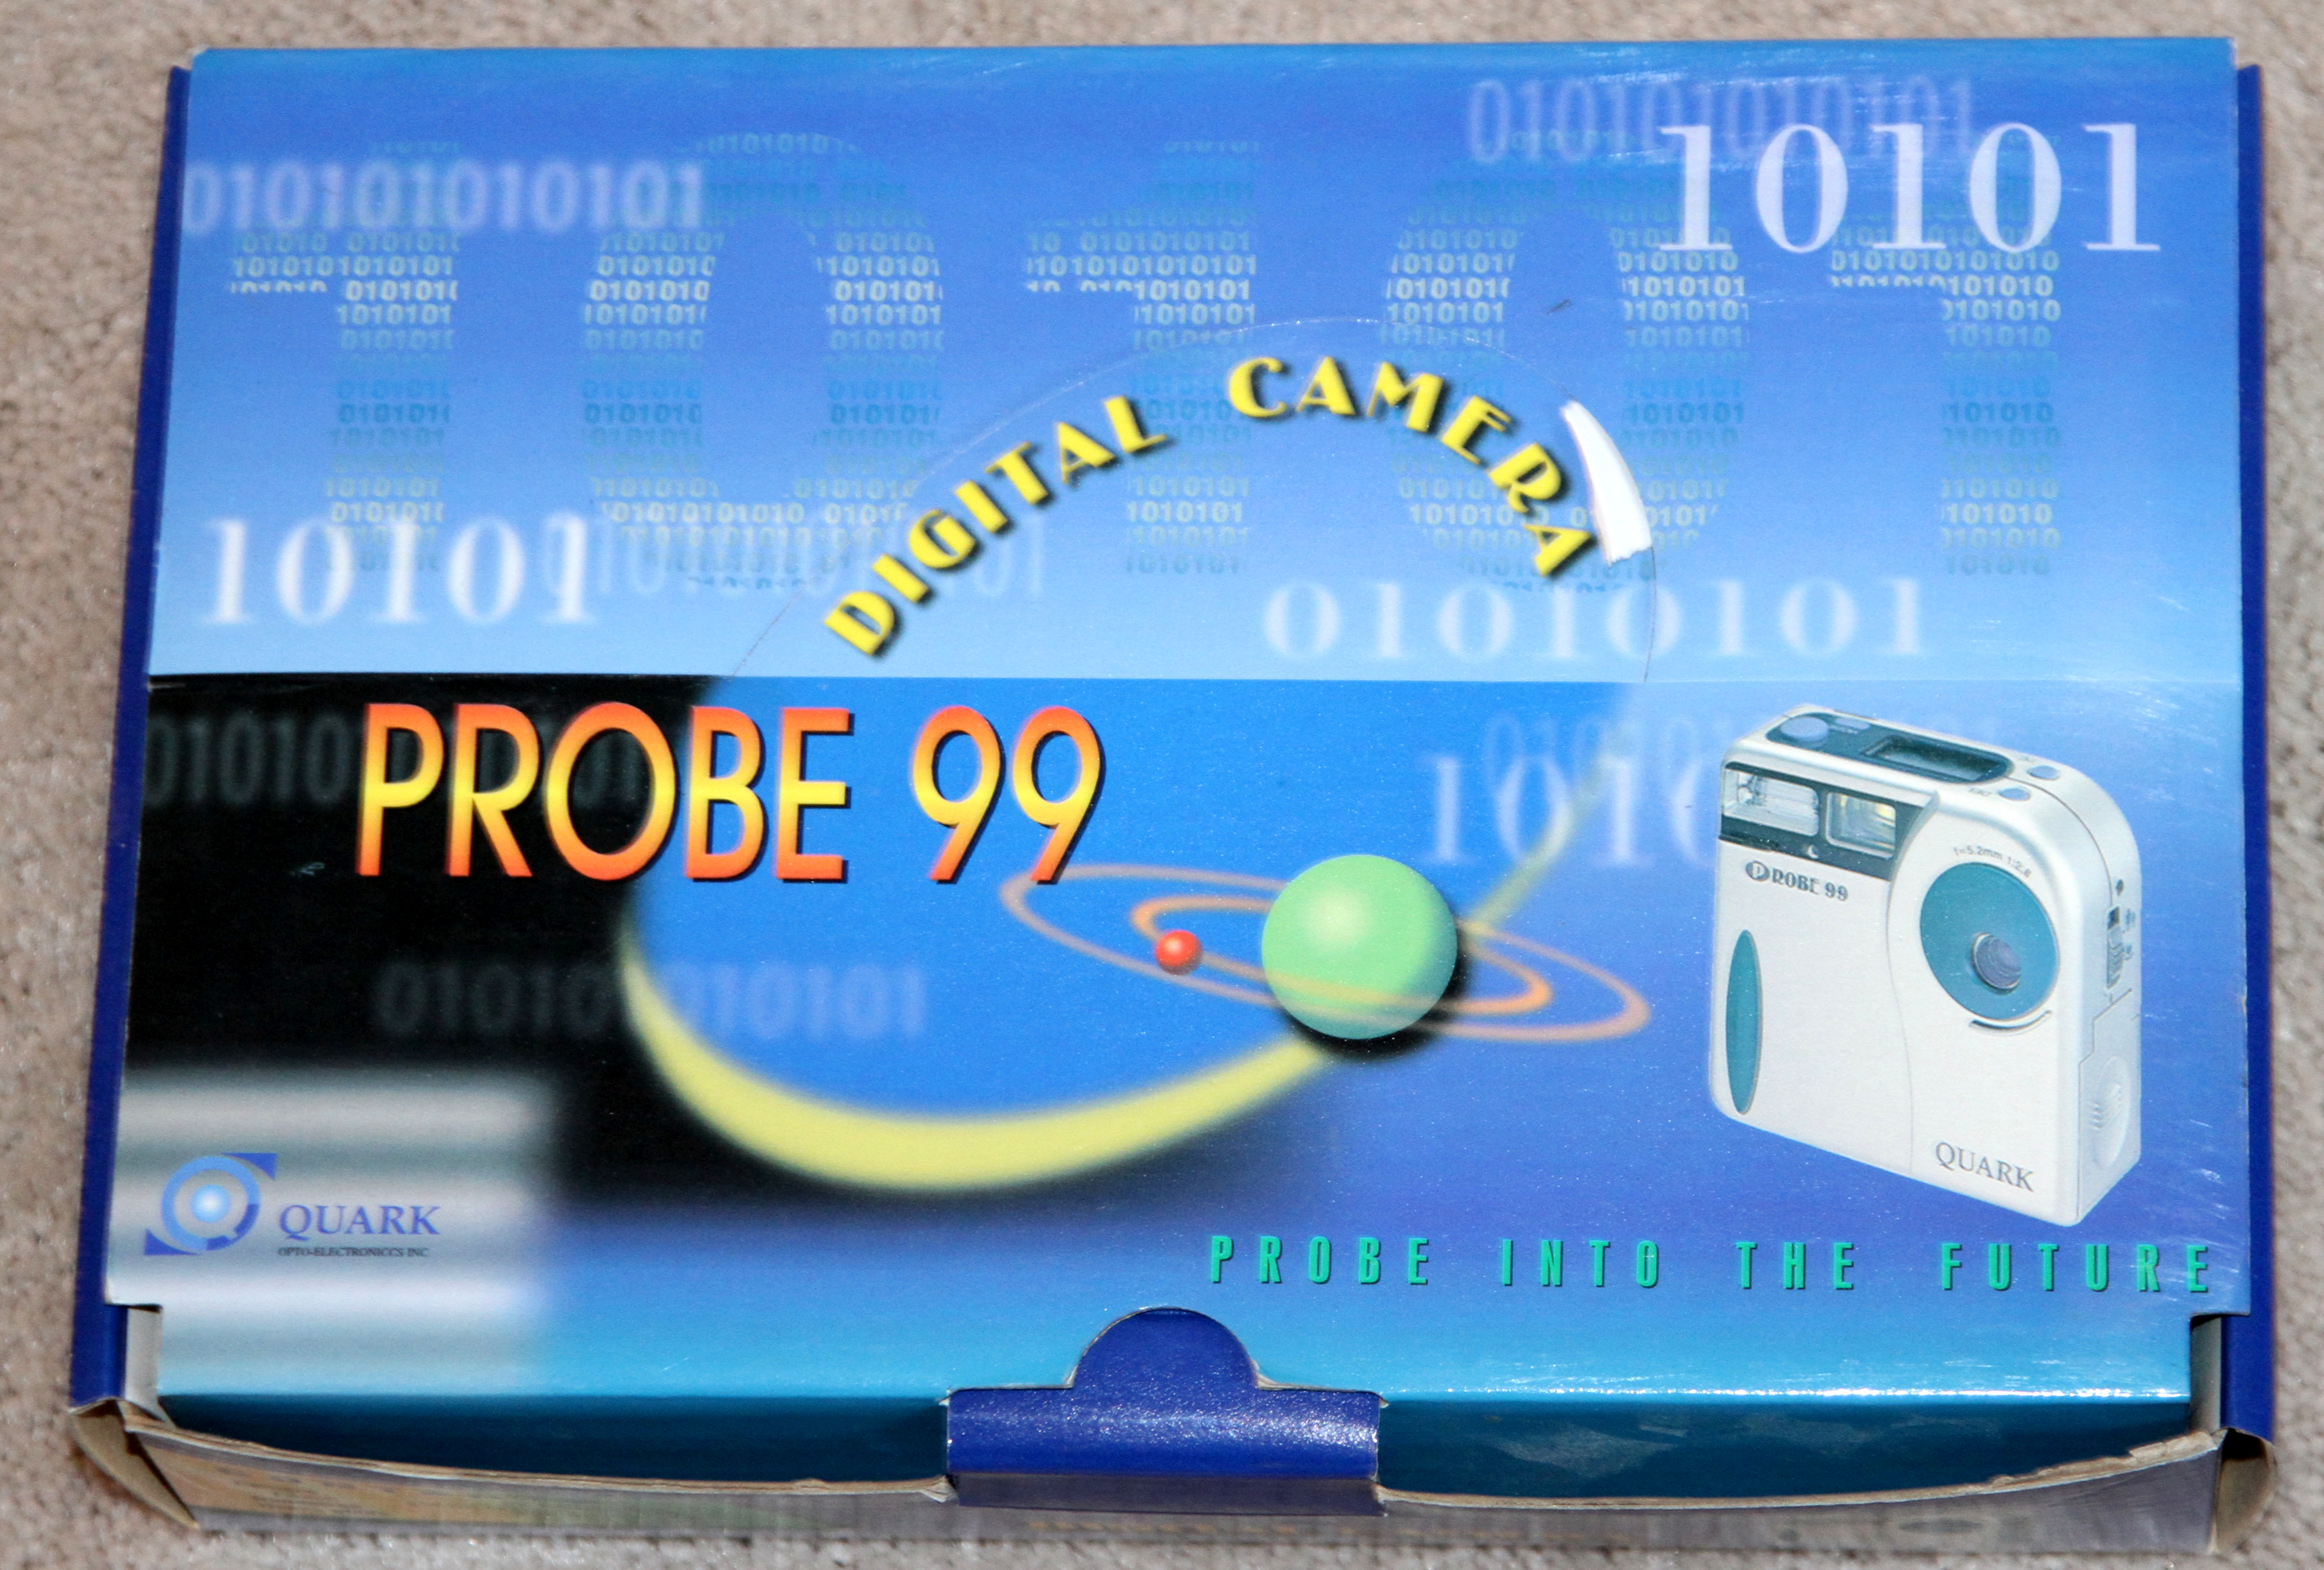 Probe 99 digital camera kit